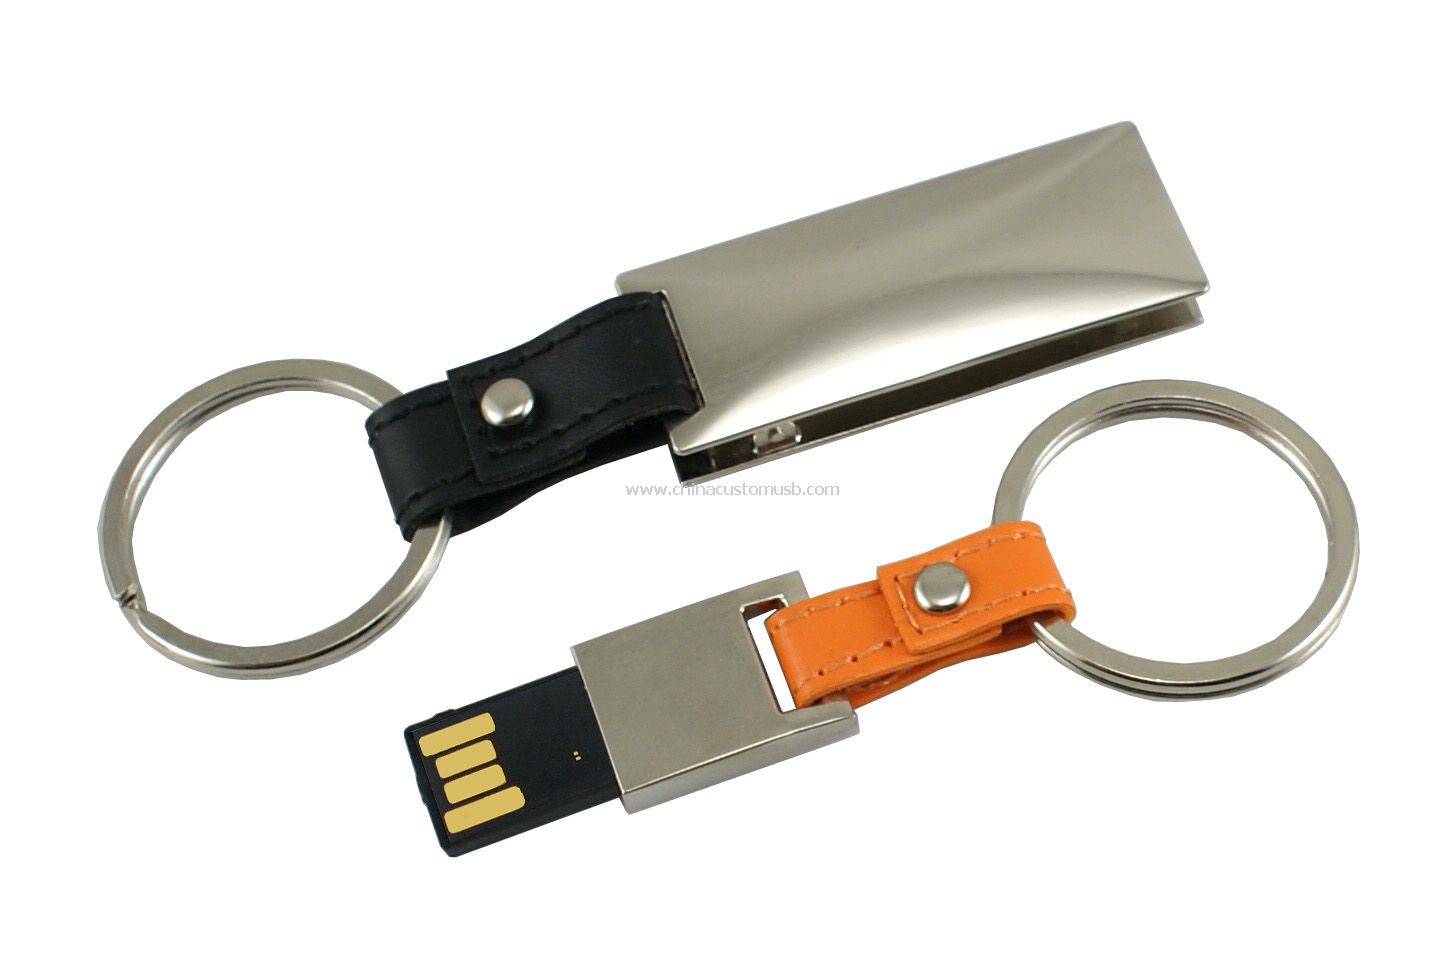 Metallinen USB hujaus ajaa avulla avaimenperä 8GB